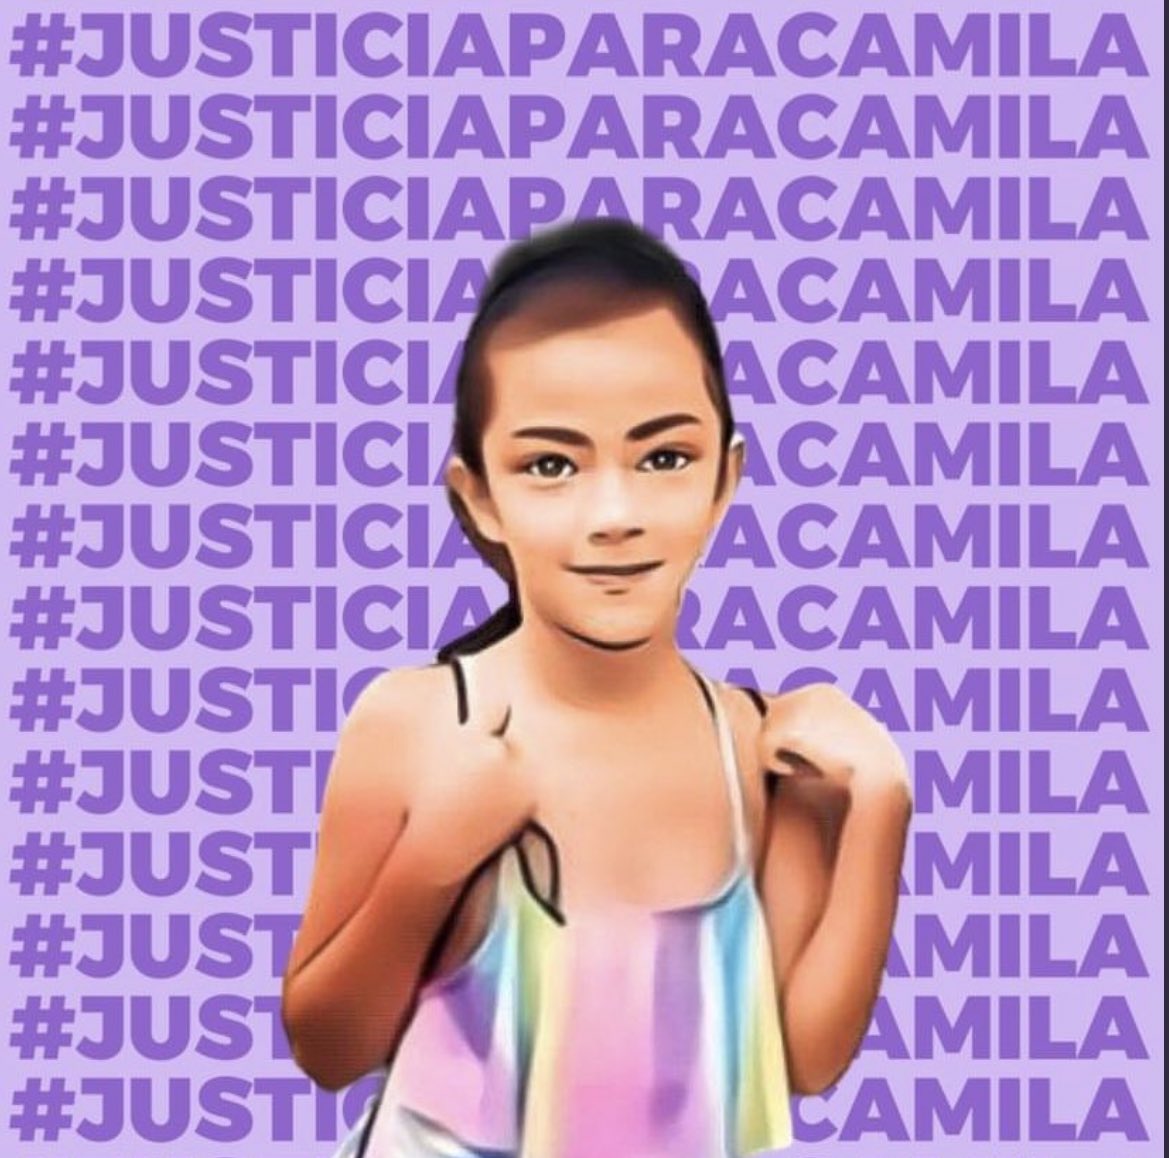 🟥 ¿Cómo fue el asesinato de la niña #Camila en #Taxco? Abro hilo 🧵 contando los que se sabe hasta el momento 👇.